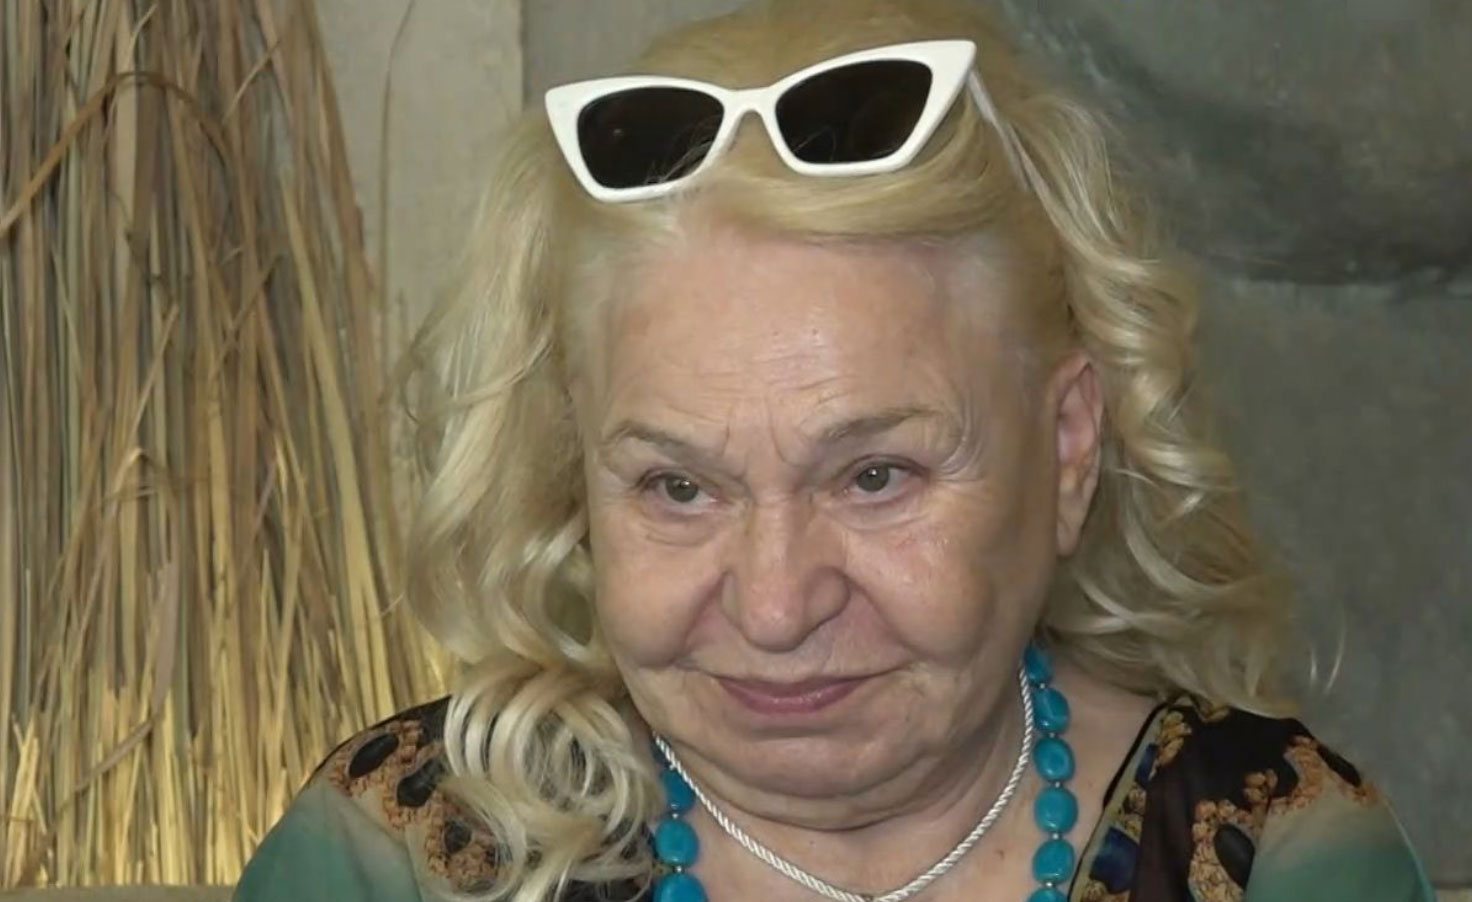 Τιτίκα Στασινοπούλου: Η Αλίκη Βουγιουκλάκη ήταν μία δυστυχισμένη γυναίκα, μεγάλωσε με πολλή πίκρα στην καρδιά